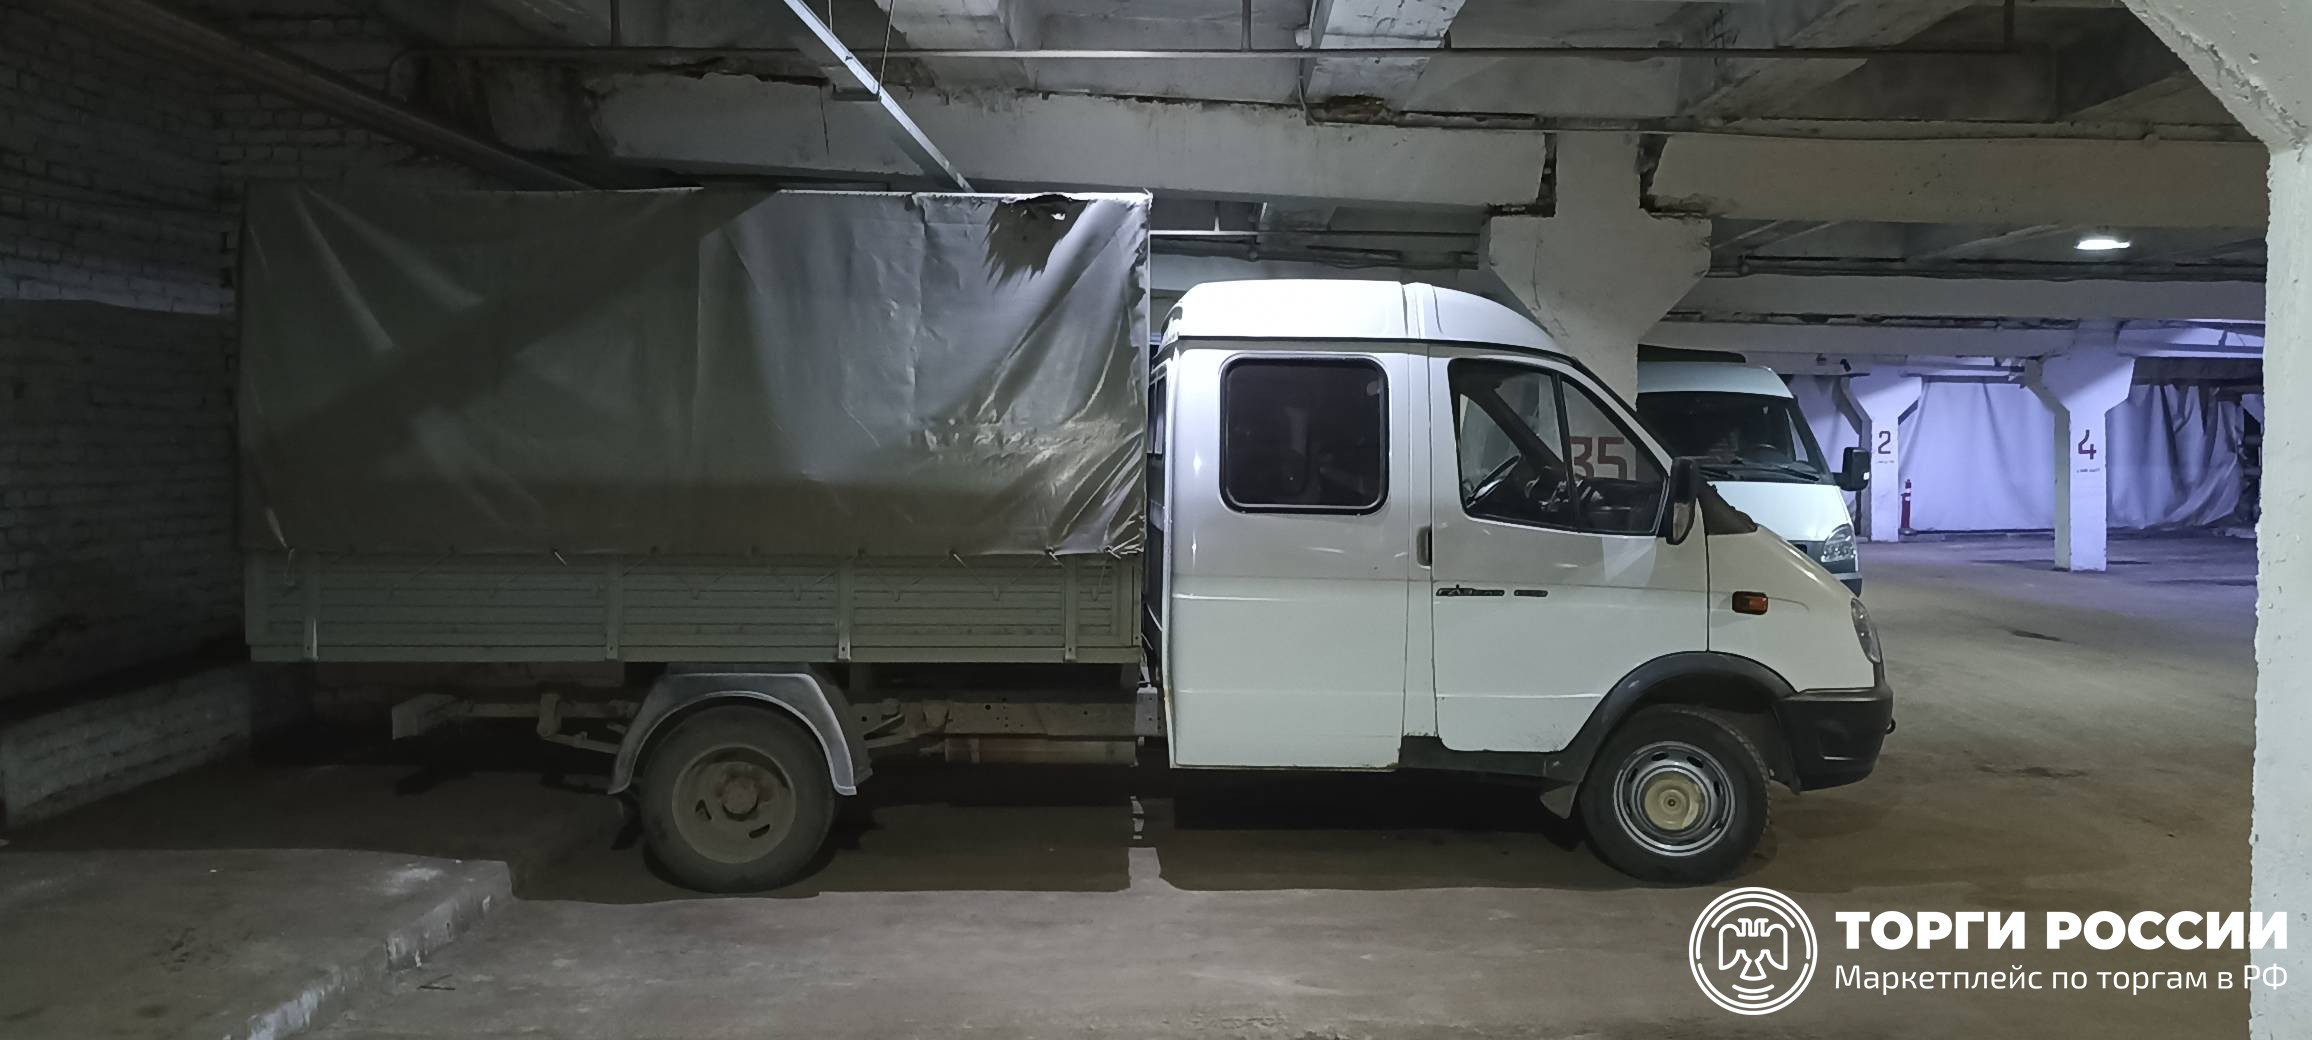 Газель 330232 технические характеристики. Транспортное средство ГАЗ-330232 грузовой с бортовой платформой, 2014 года. Грузовой фургон на базе легкового автомобиля ГАЗ 330232.